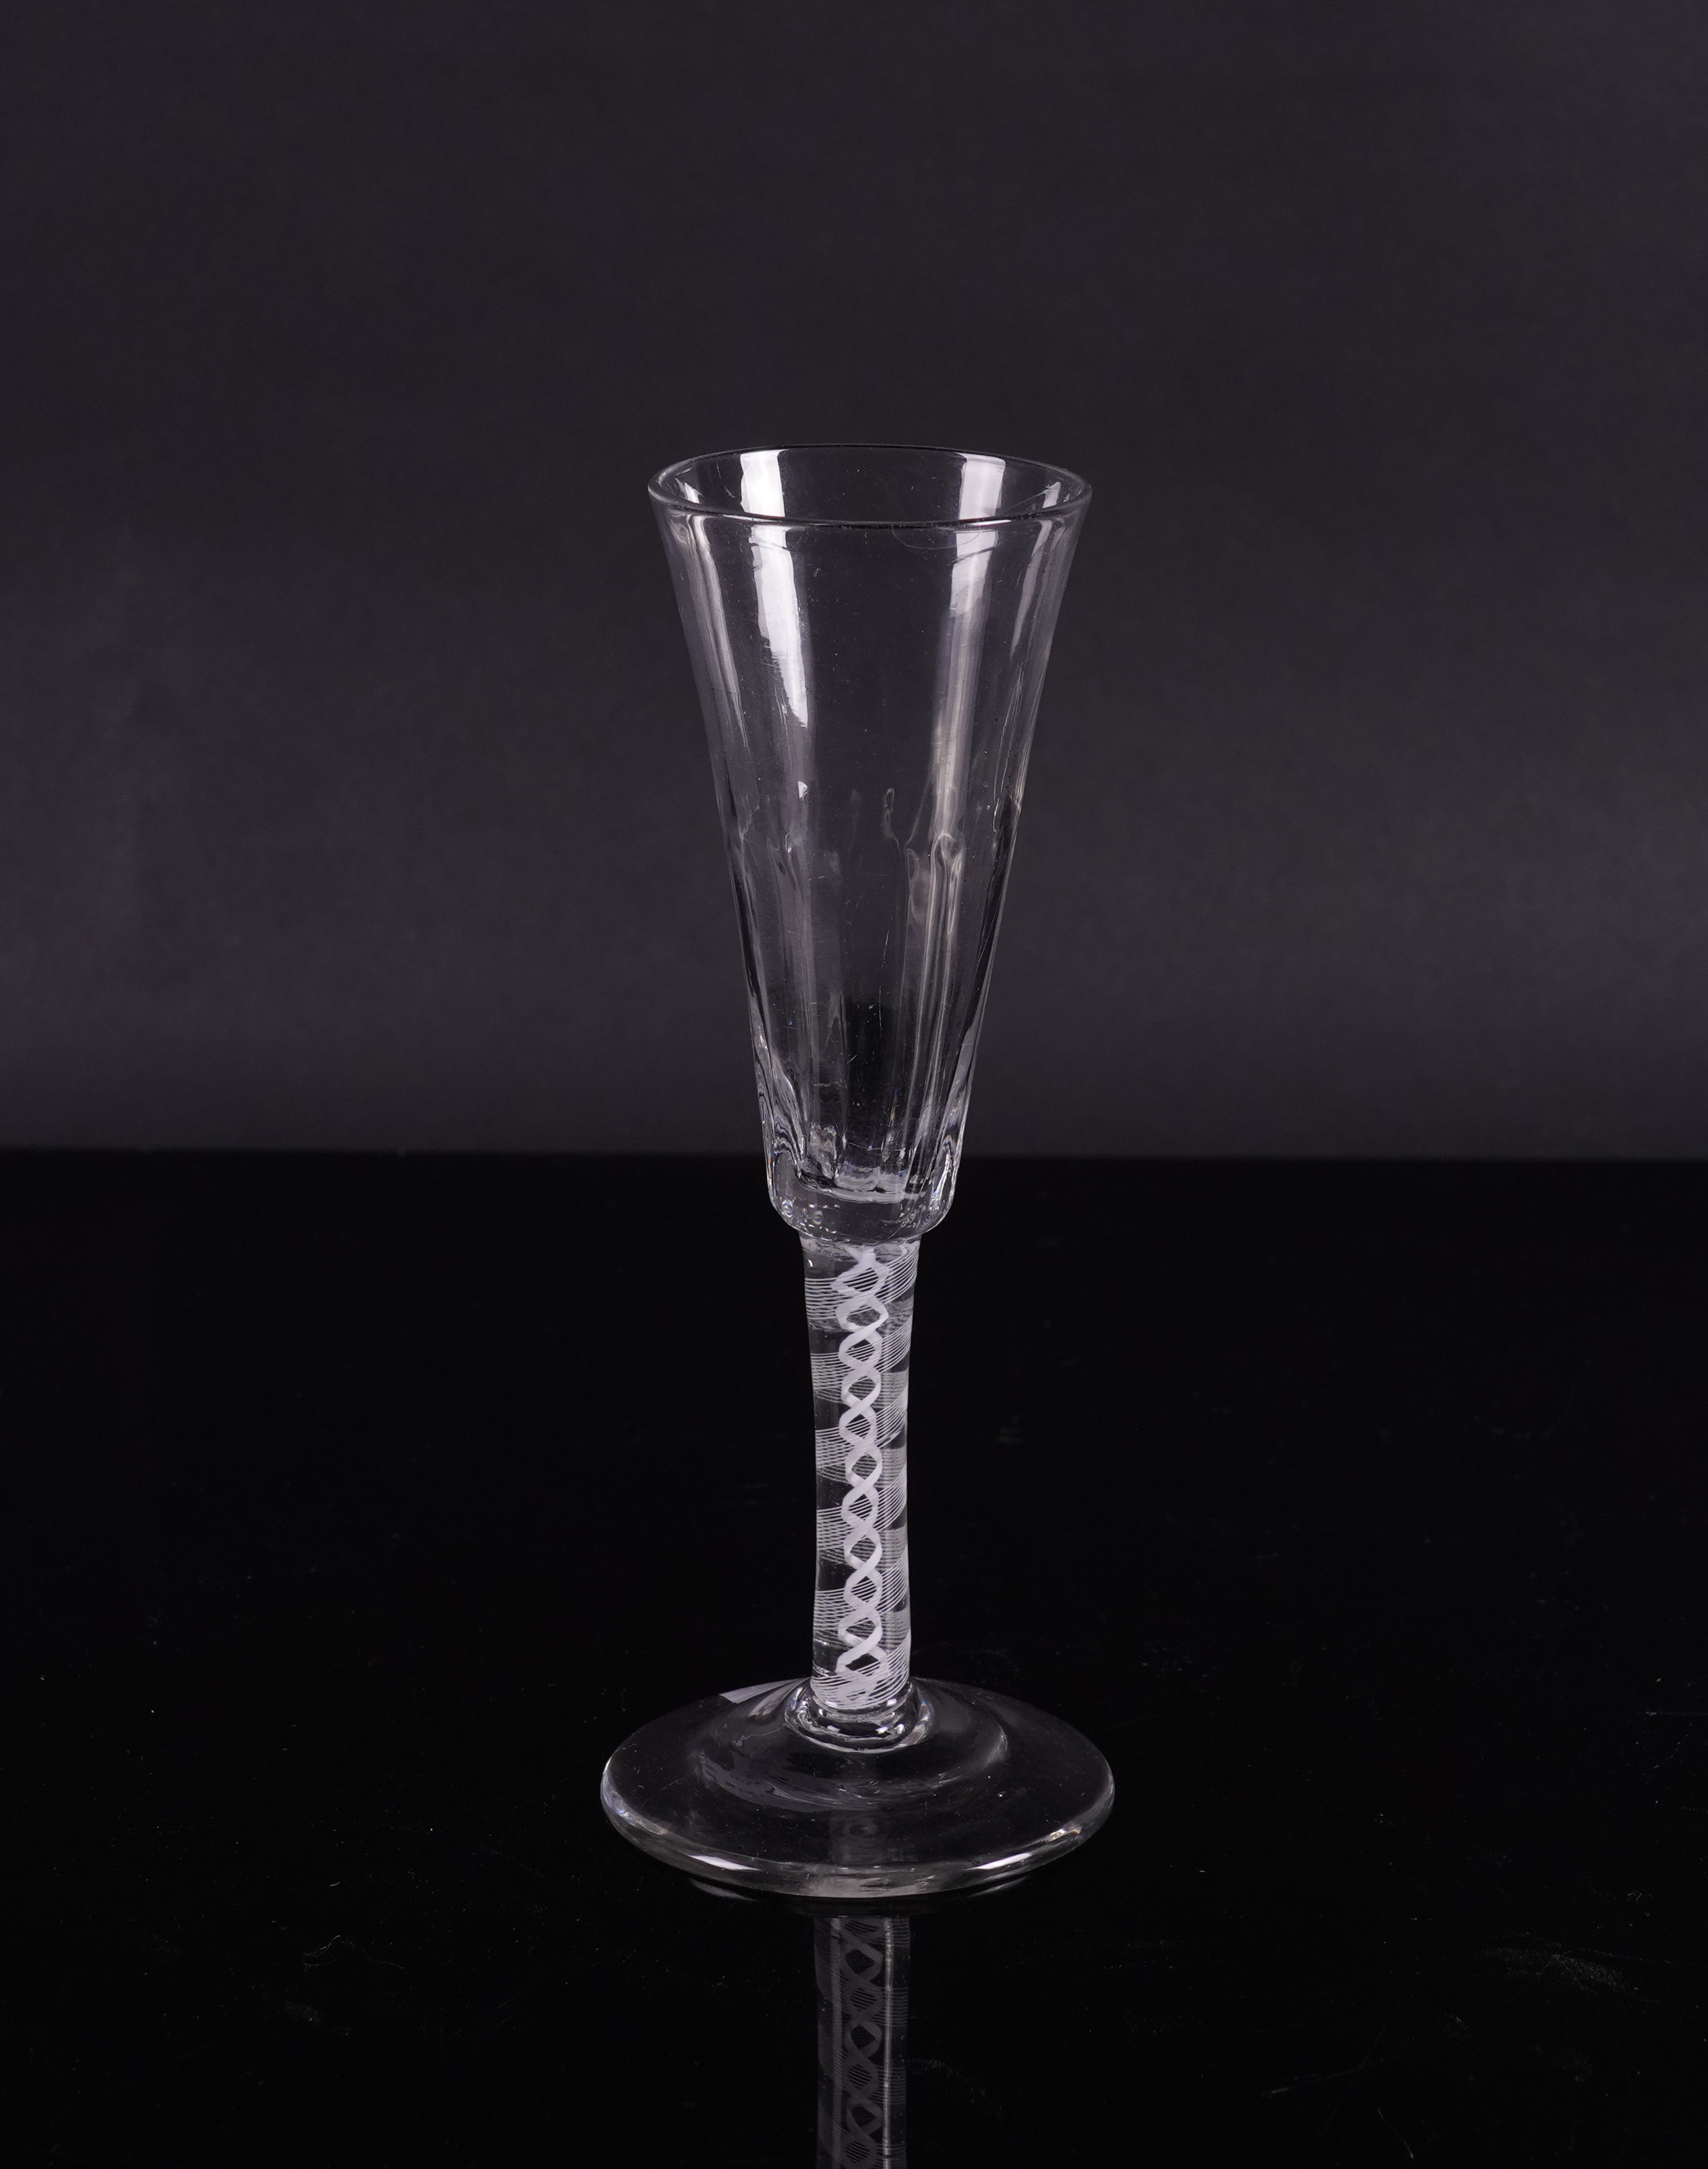 AN OPAQUE TWIST RATAFIA GLASS - Image 2 of 2